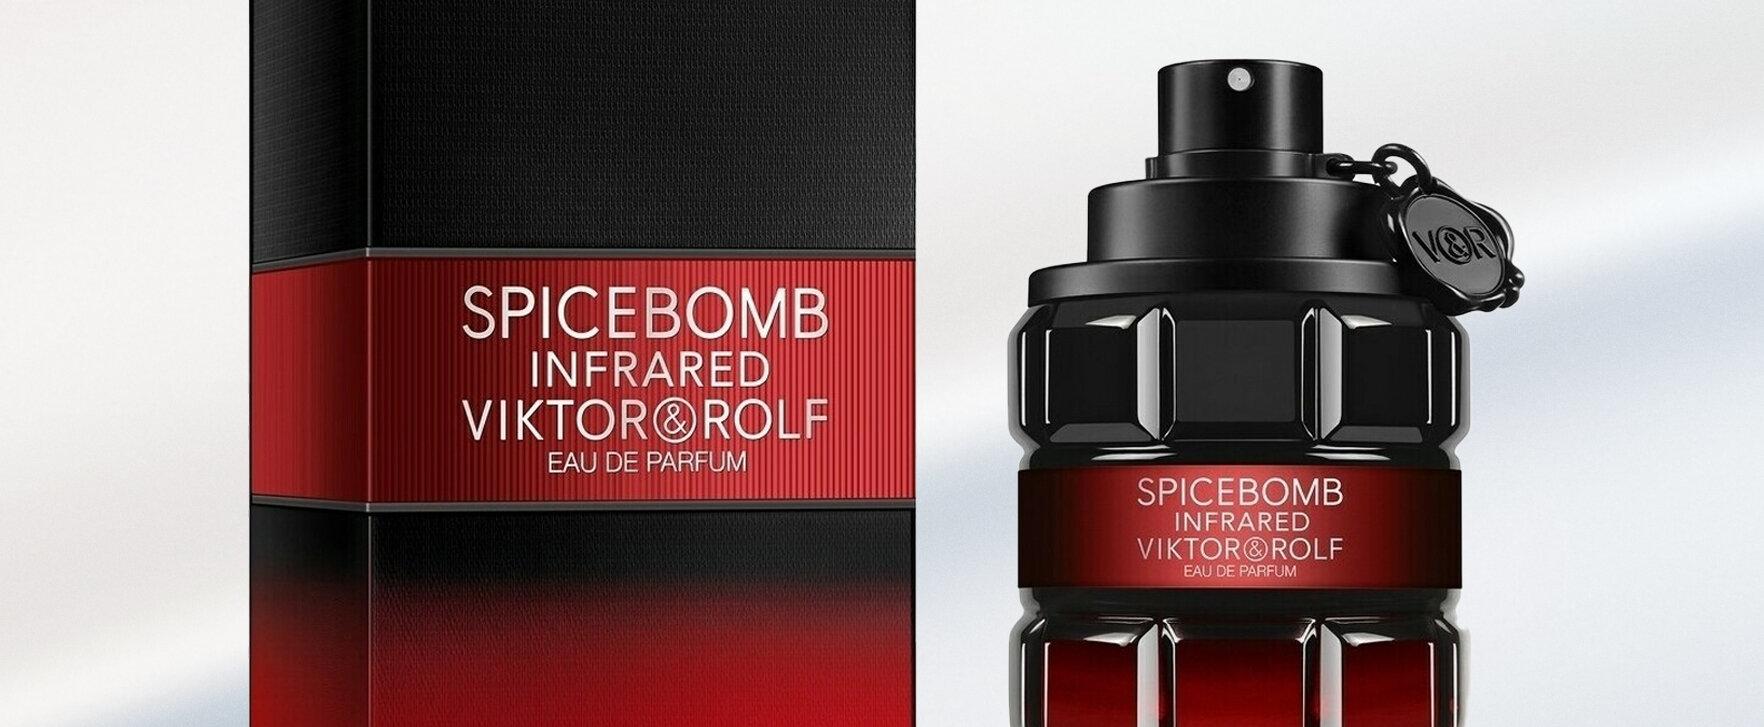 Viktor & Rolf enthüllt Spicebomb Infrared als Eau de Parfum